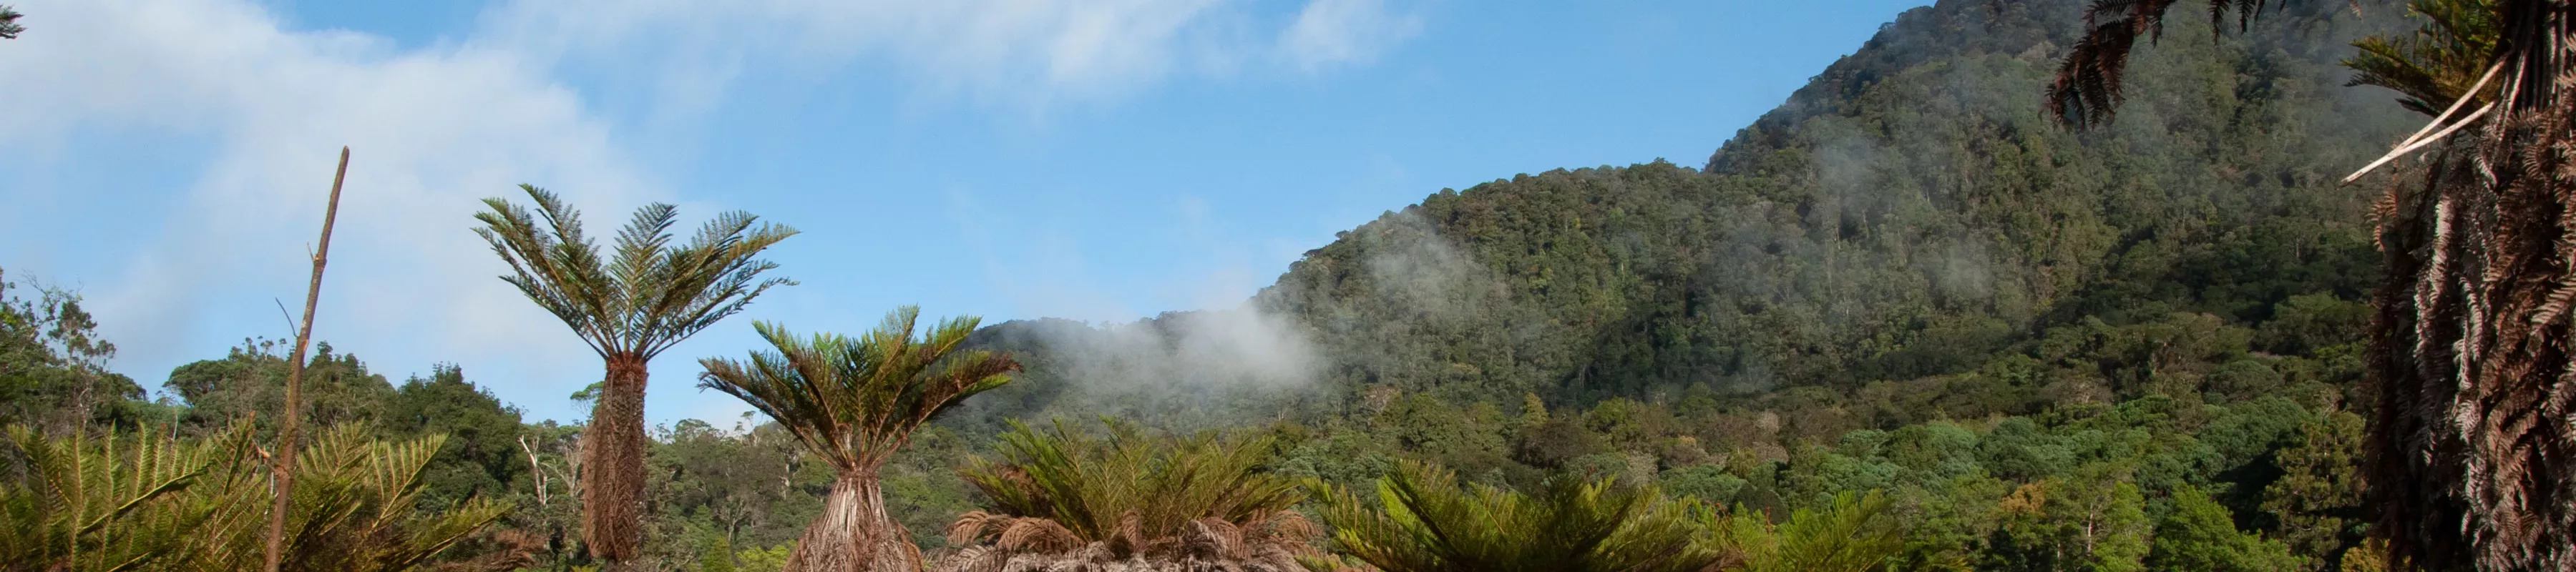 Tree ferns in New Guinea